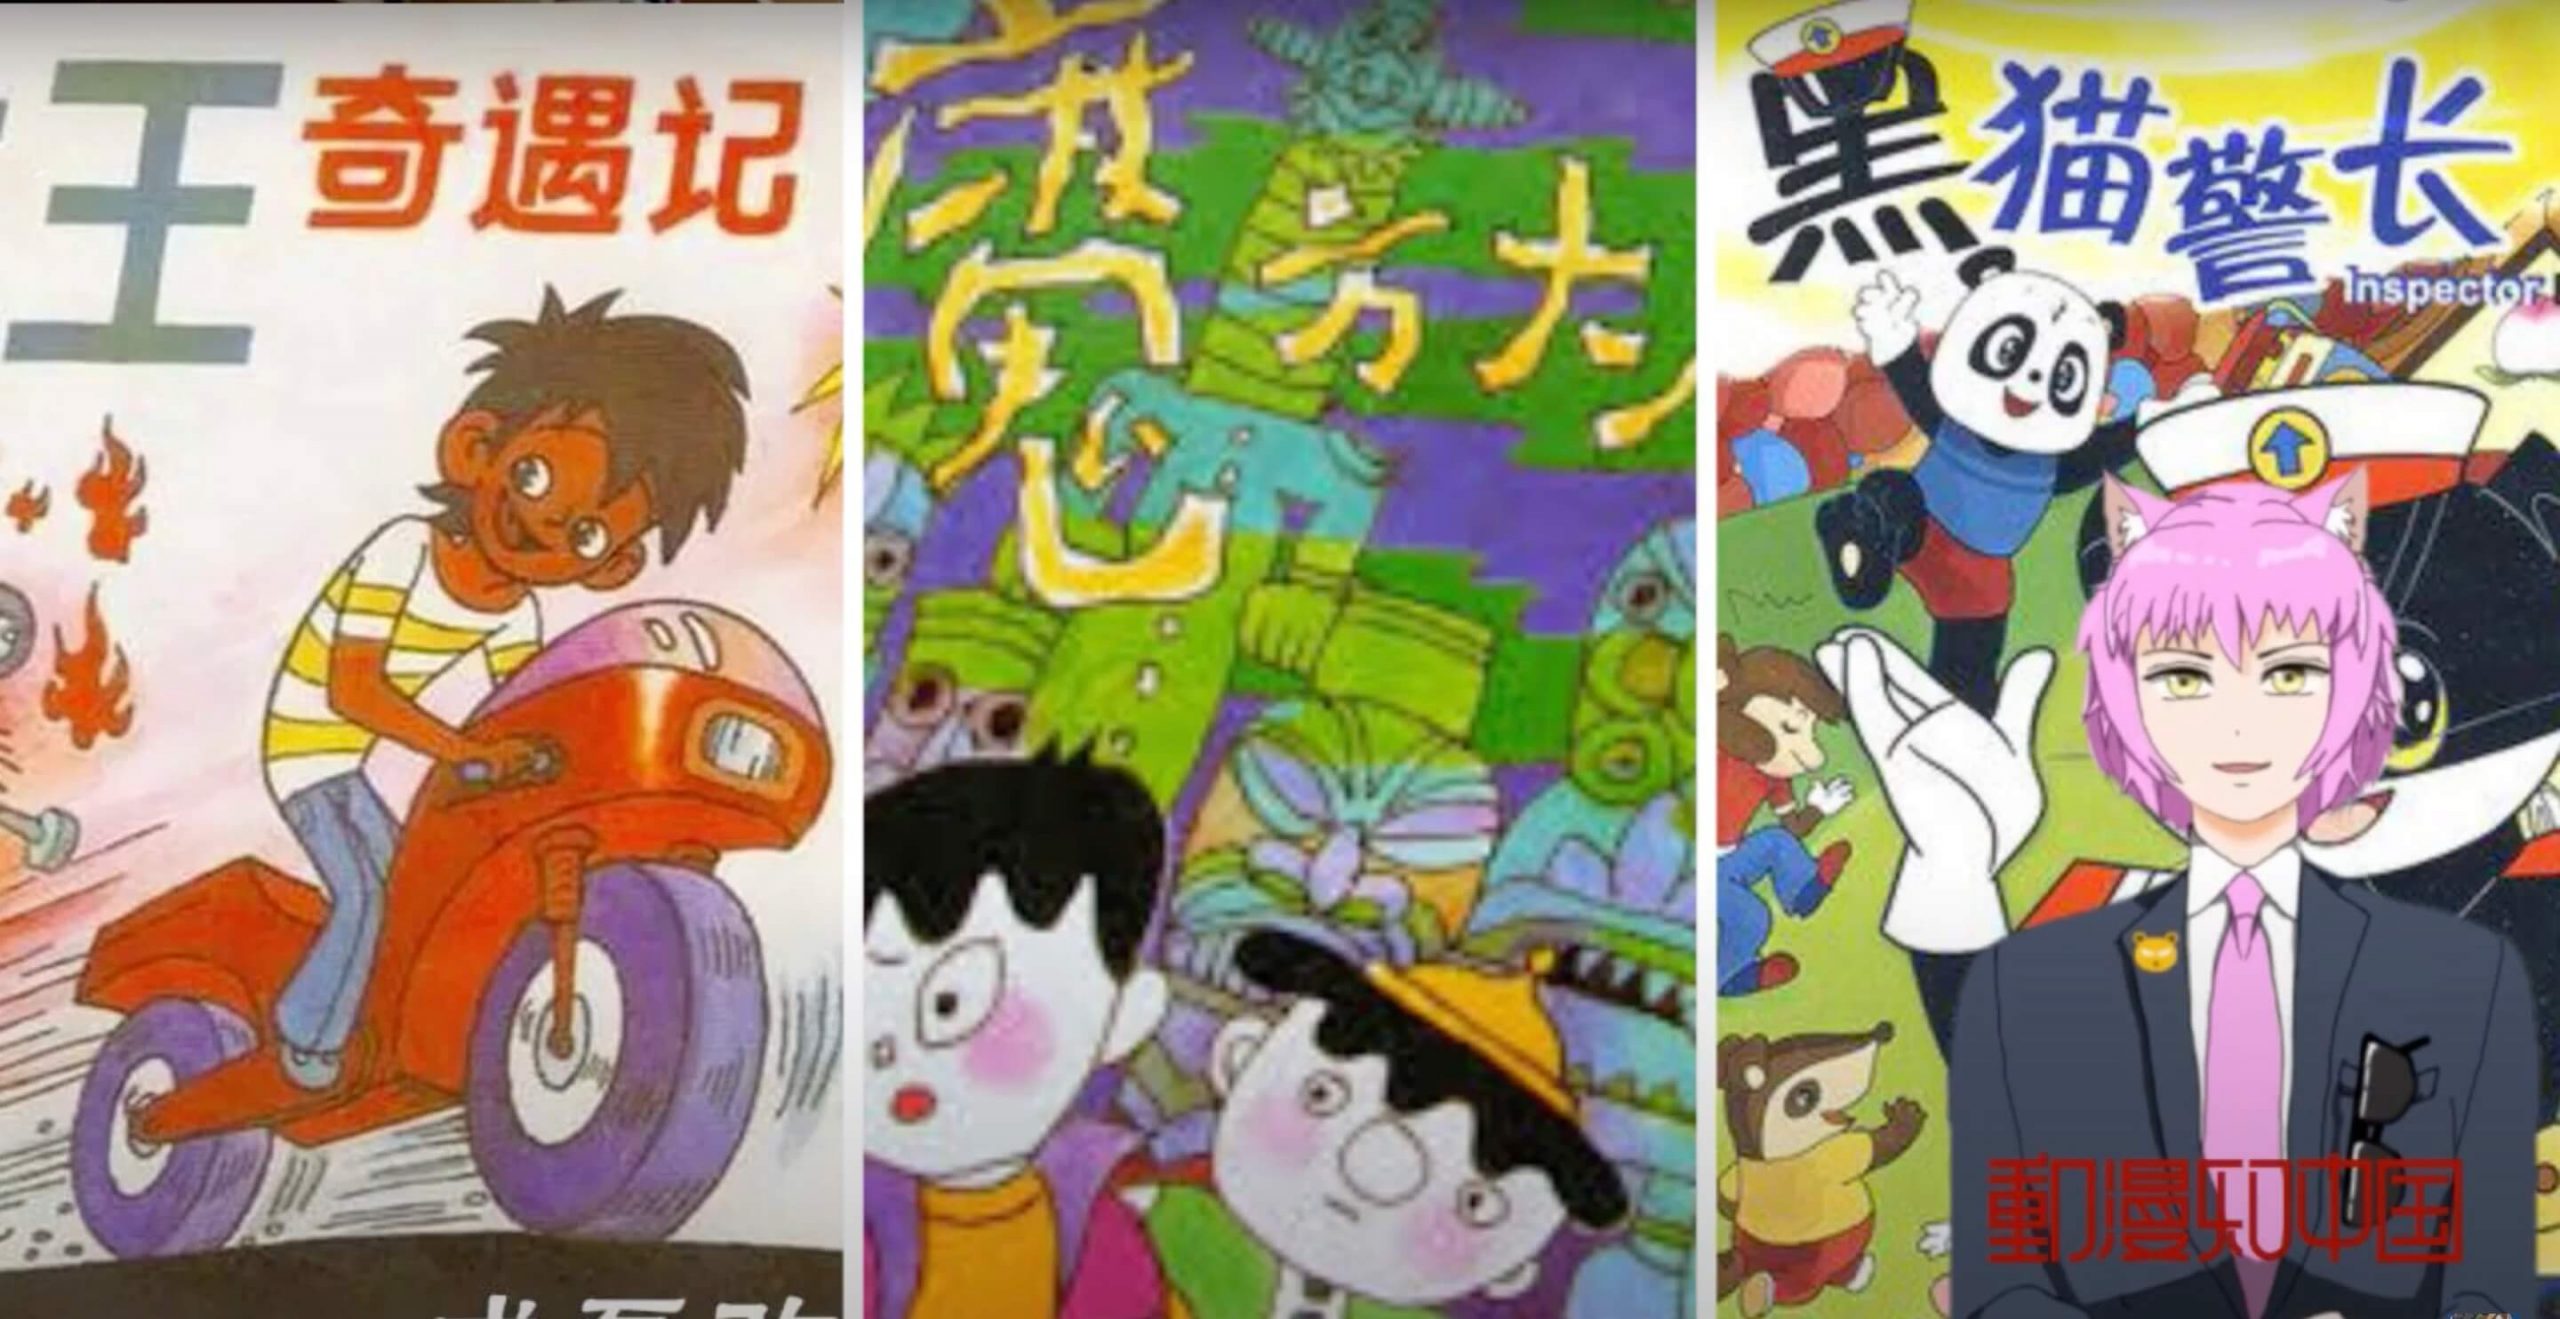 アニメで知る中国 第32回 お家で見たいヤバイ中国アニメ 邋遢大王奇遇記とは Jmag News